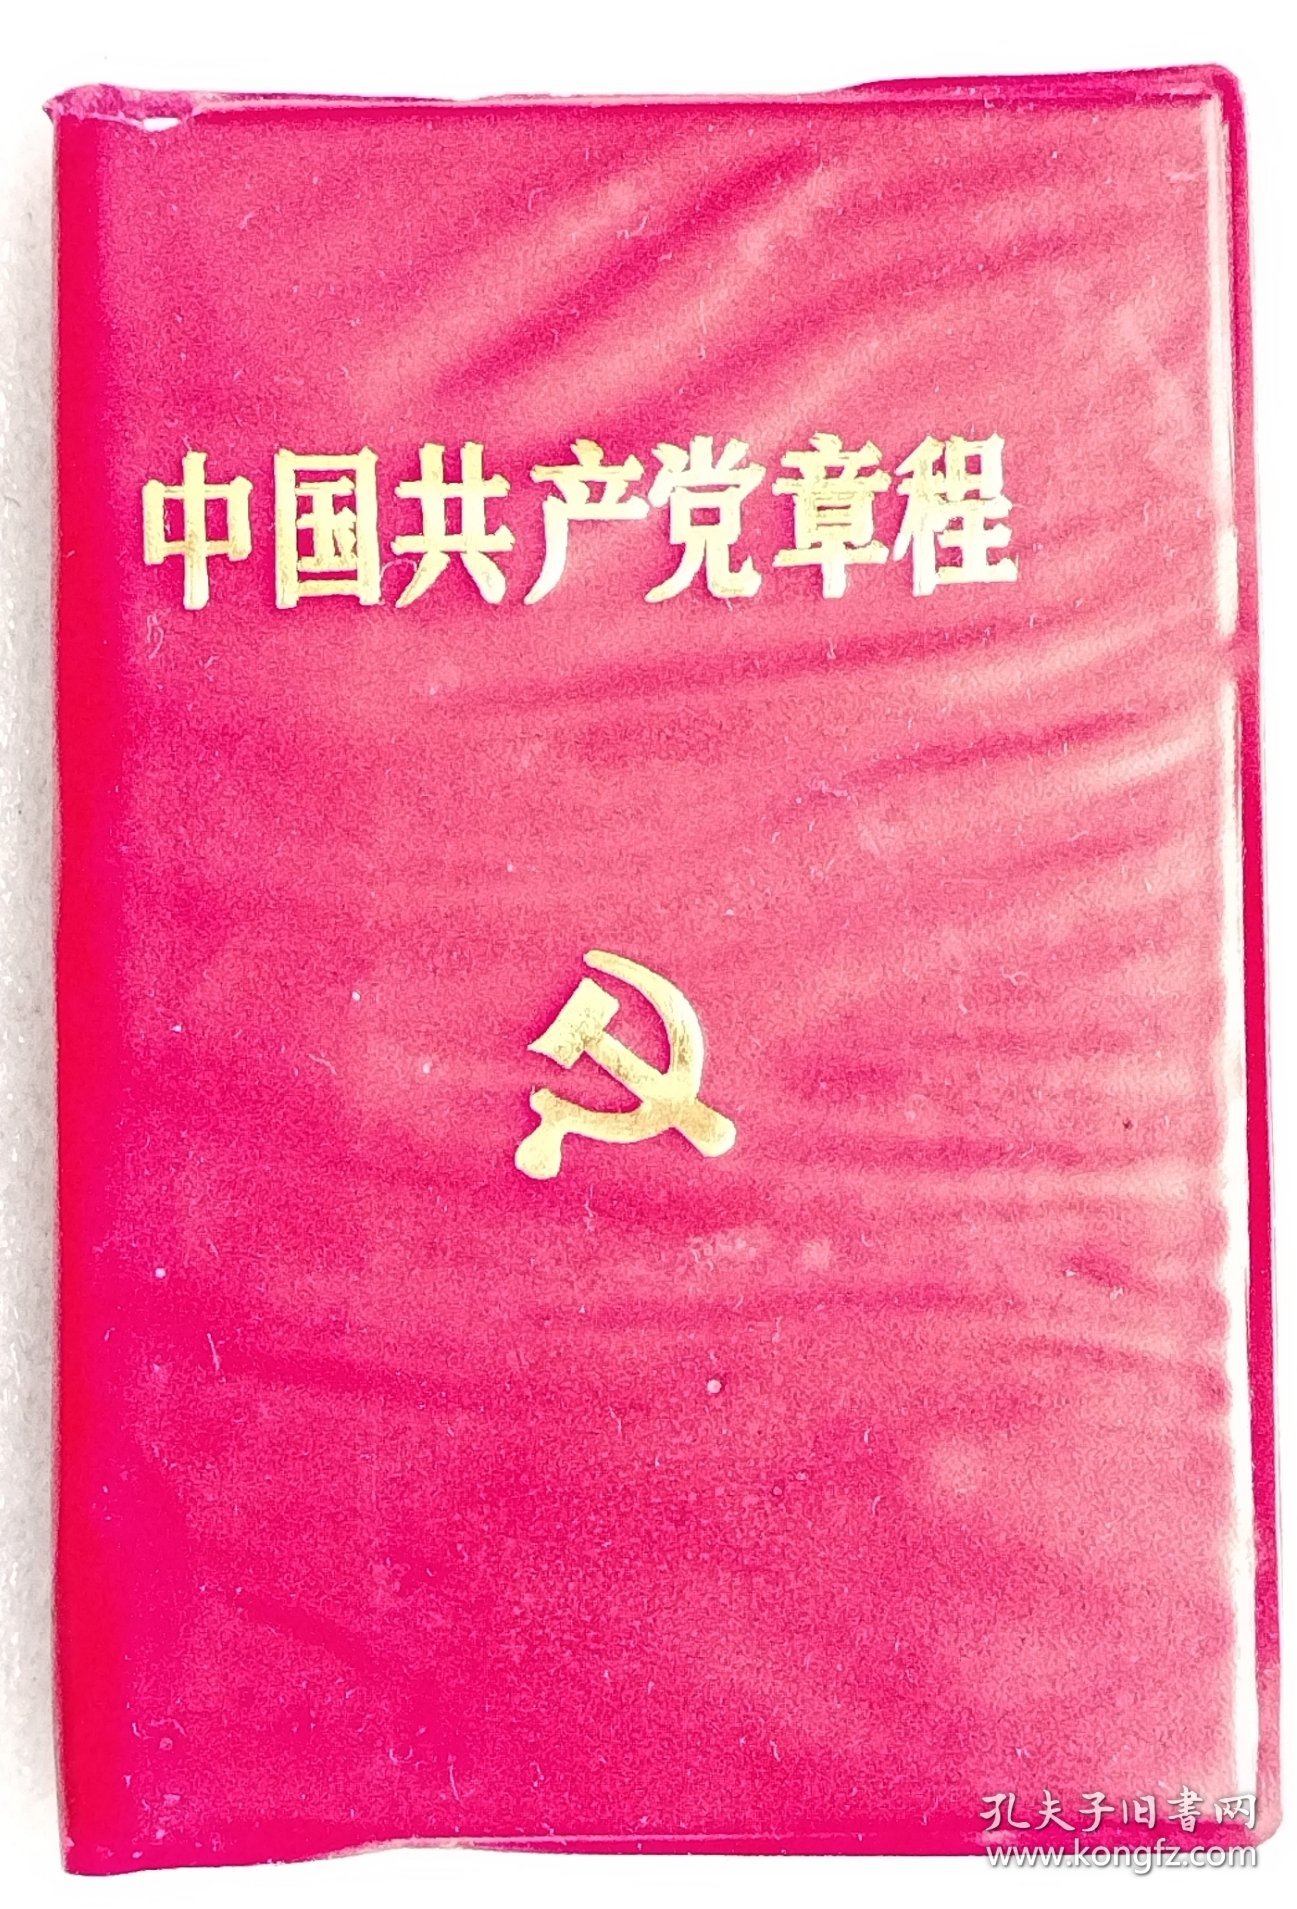 中国共产党章程 （1992年）